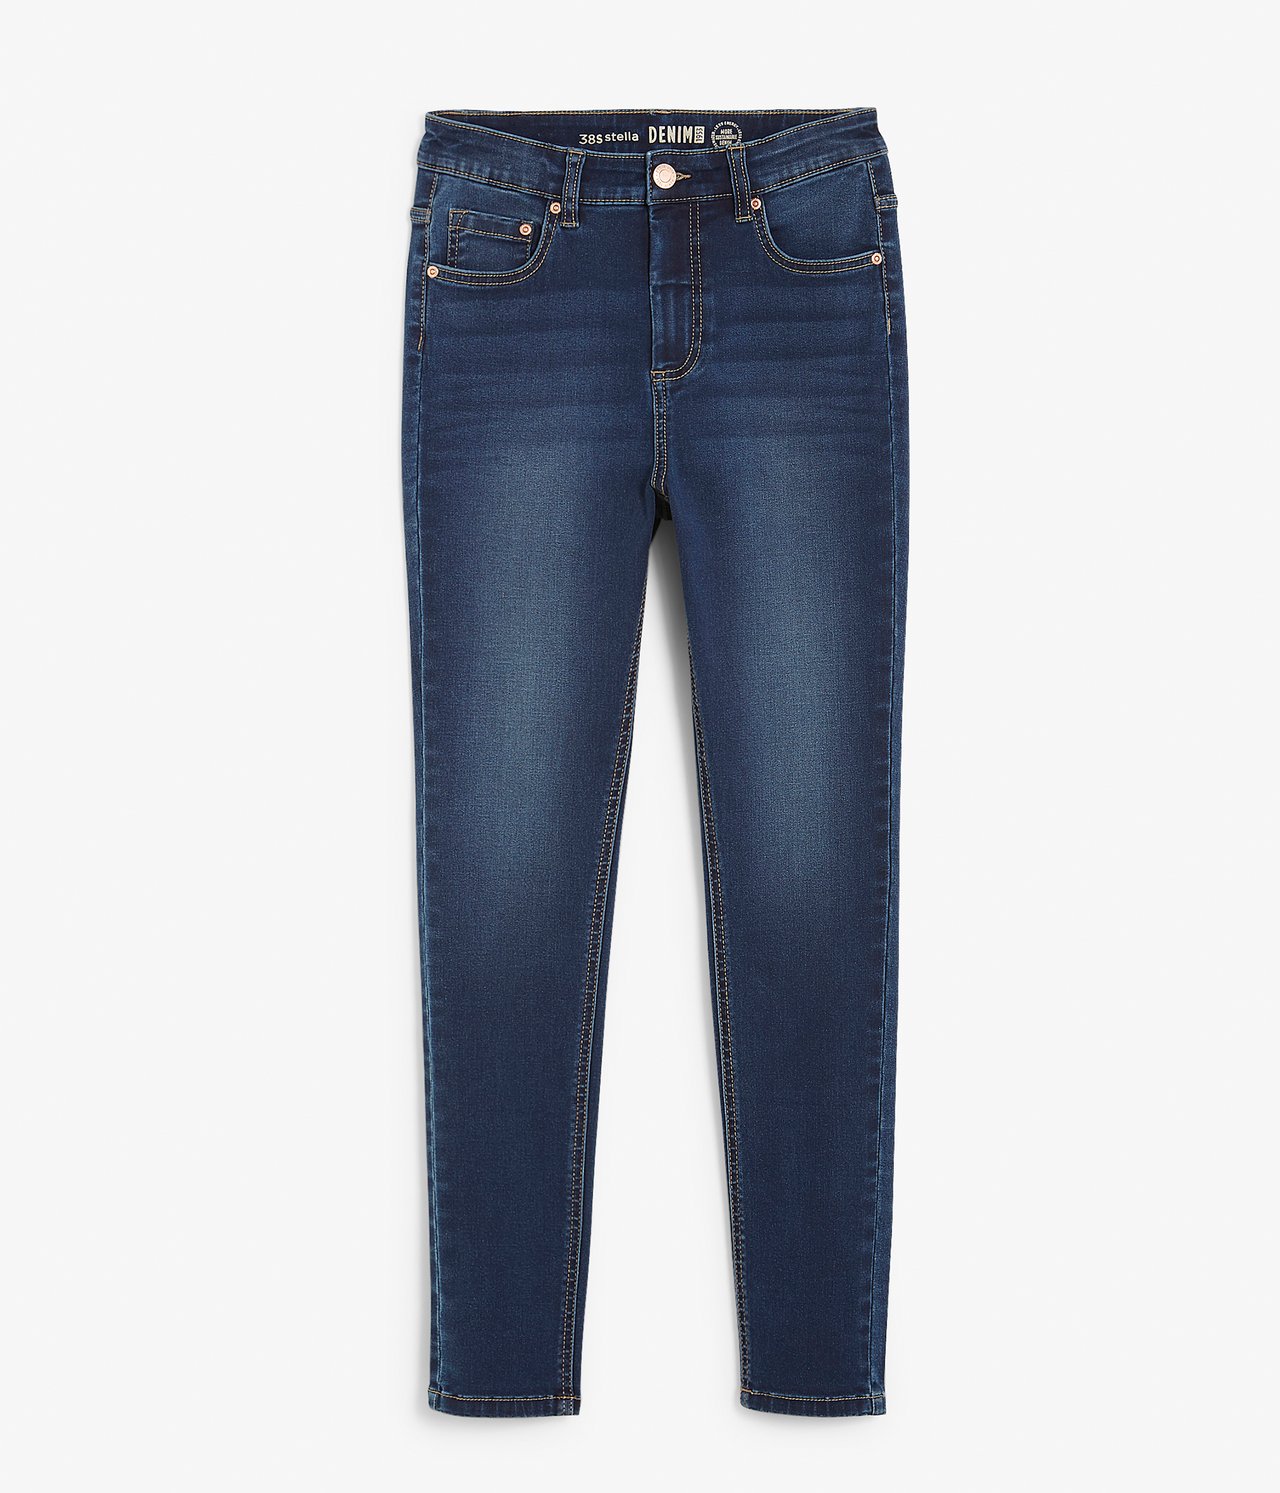 Super slim jeans short leg Mørk denim - null - 1